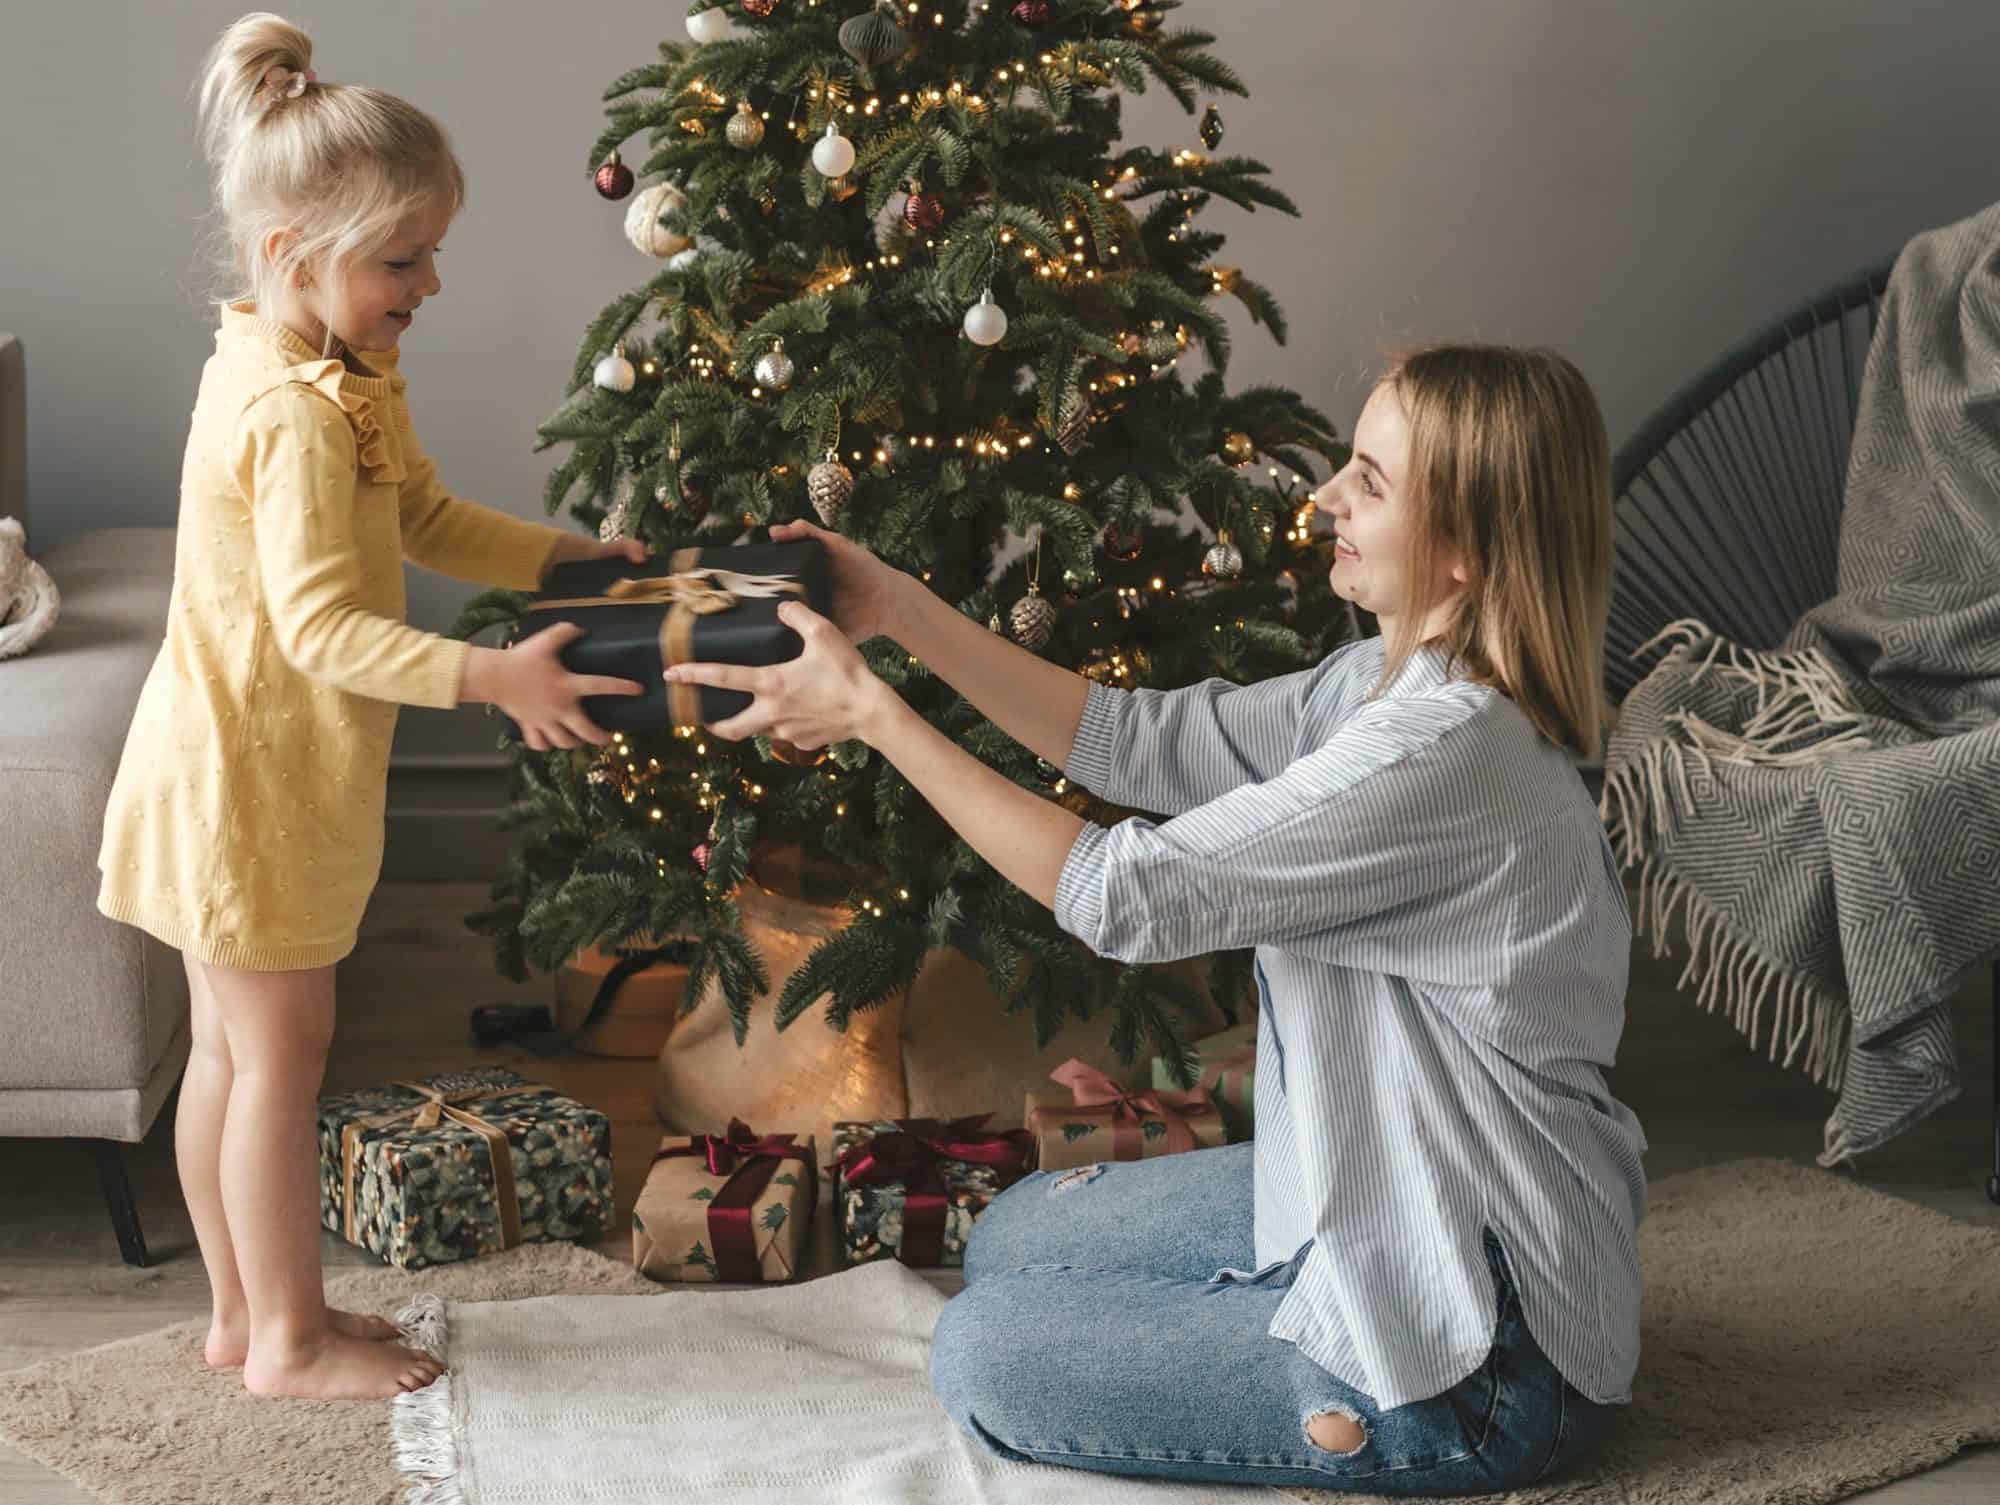 Regalos de Navidad: madre prepara 300 a sus hijos